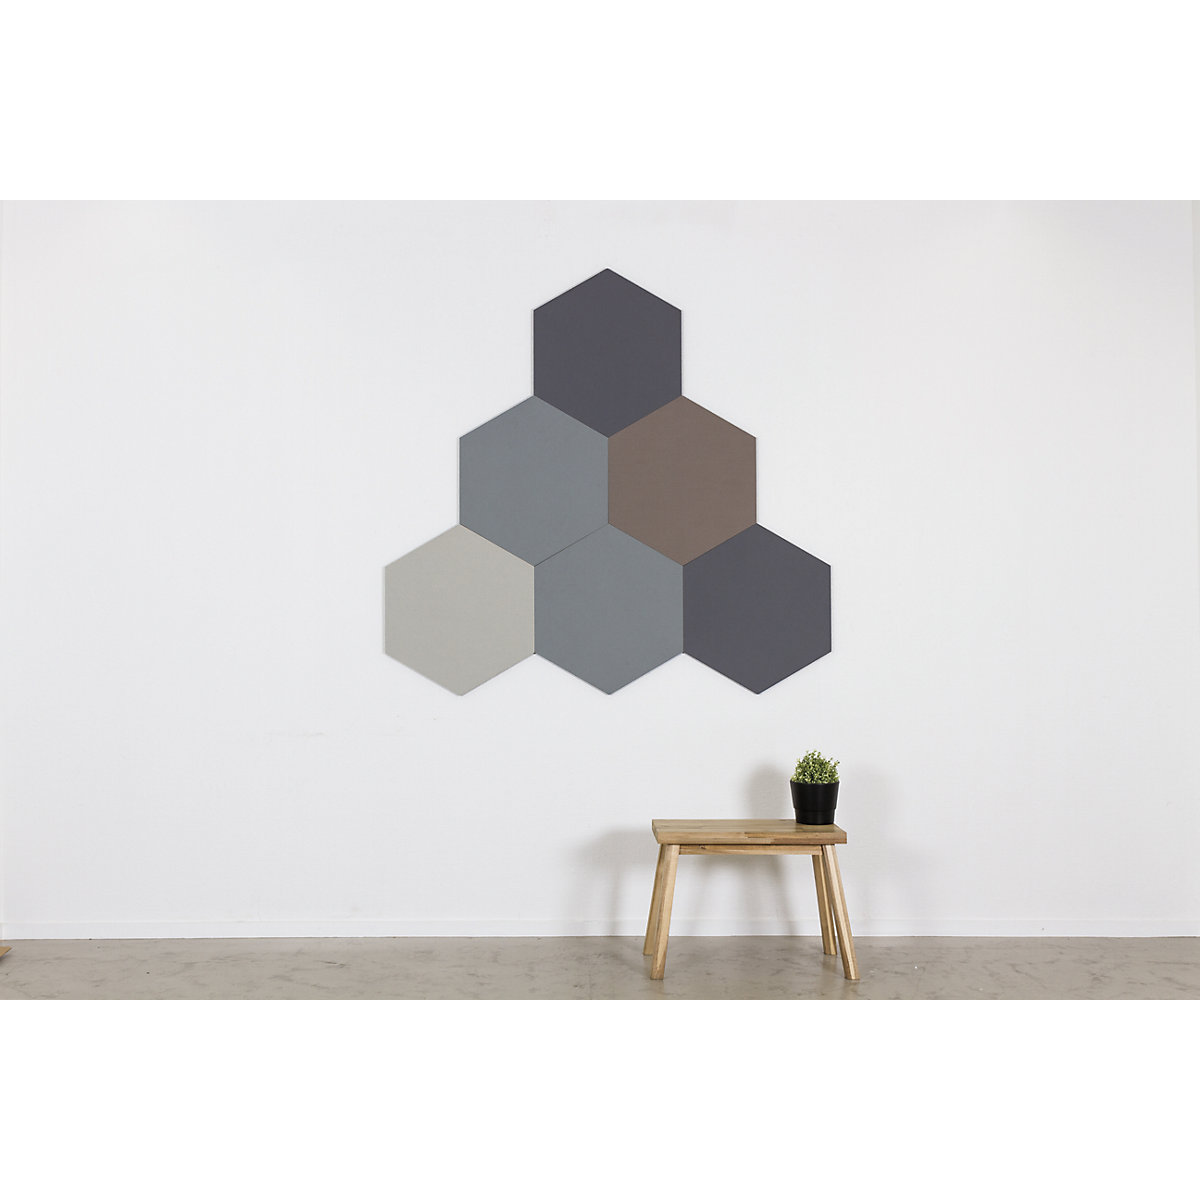 Quadro de pinos com design hexagonal – Chameleon (Imagem do produto 7)-6